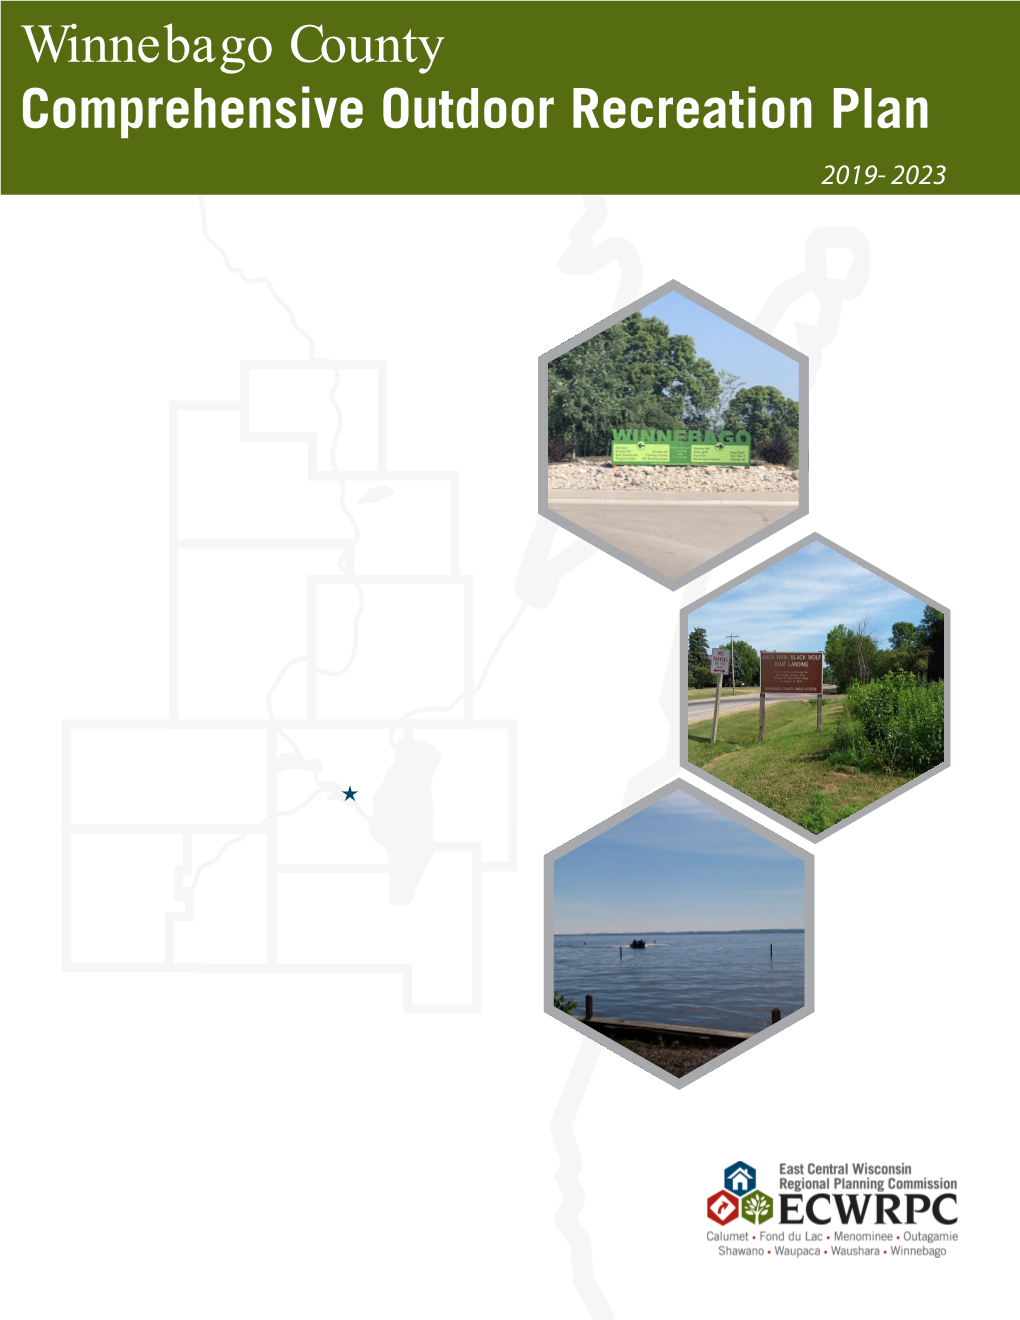 Winnebago County Comprehensive Outdoor Recreation Plan 2019-2023